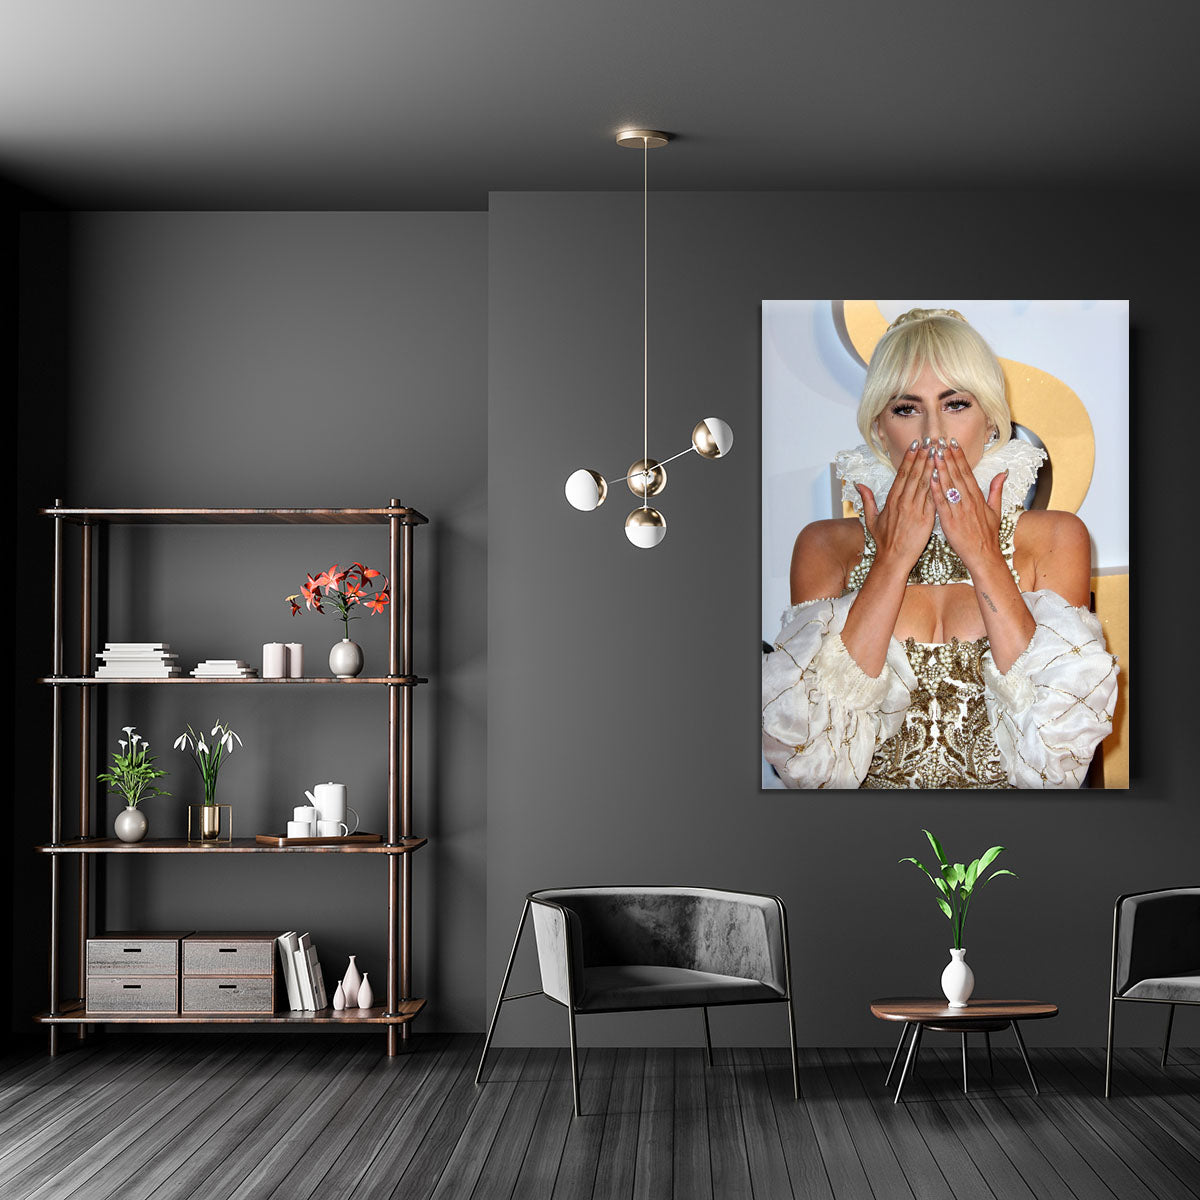 Lady Gaga blows a kiss Canvas Print or Poster - Canvas Art Rocks - 5